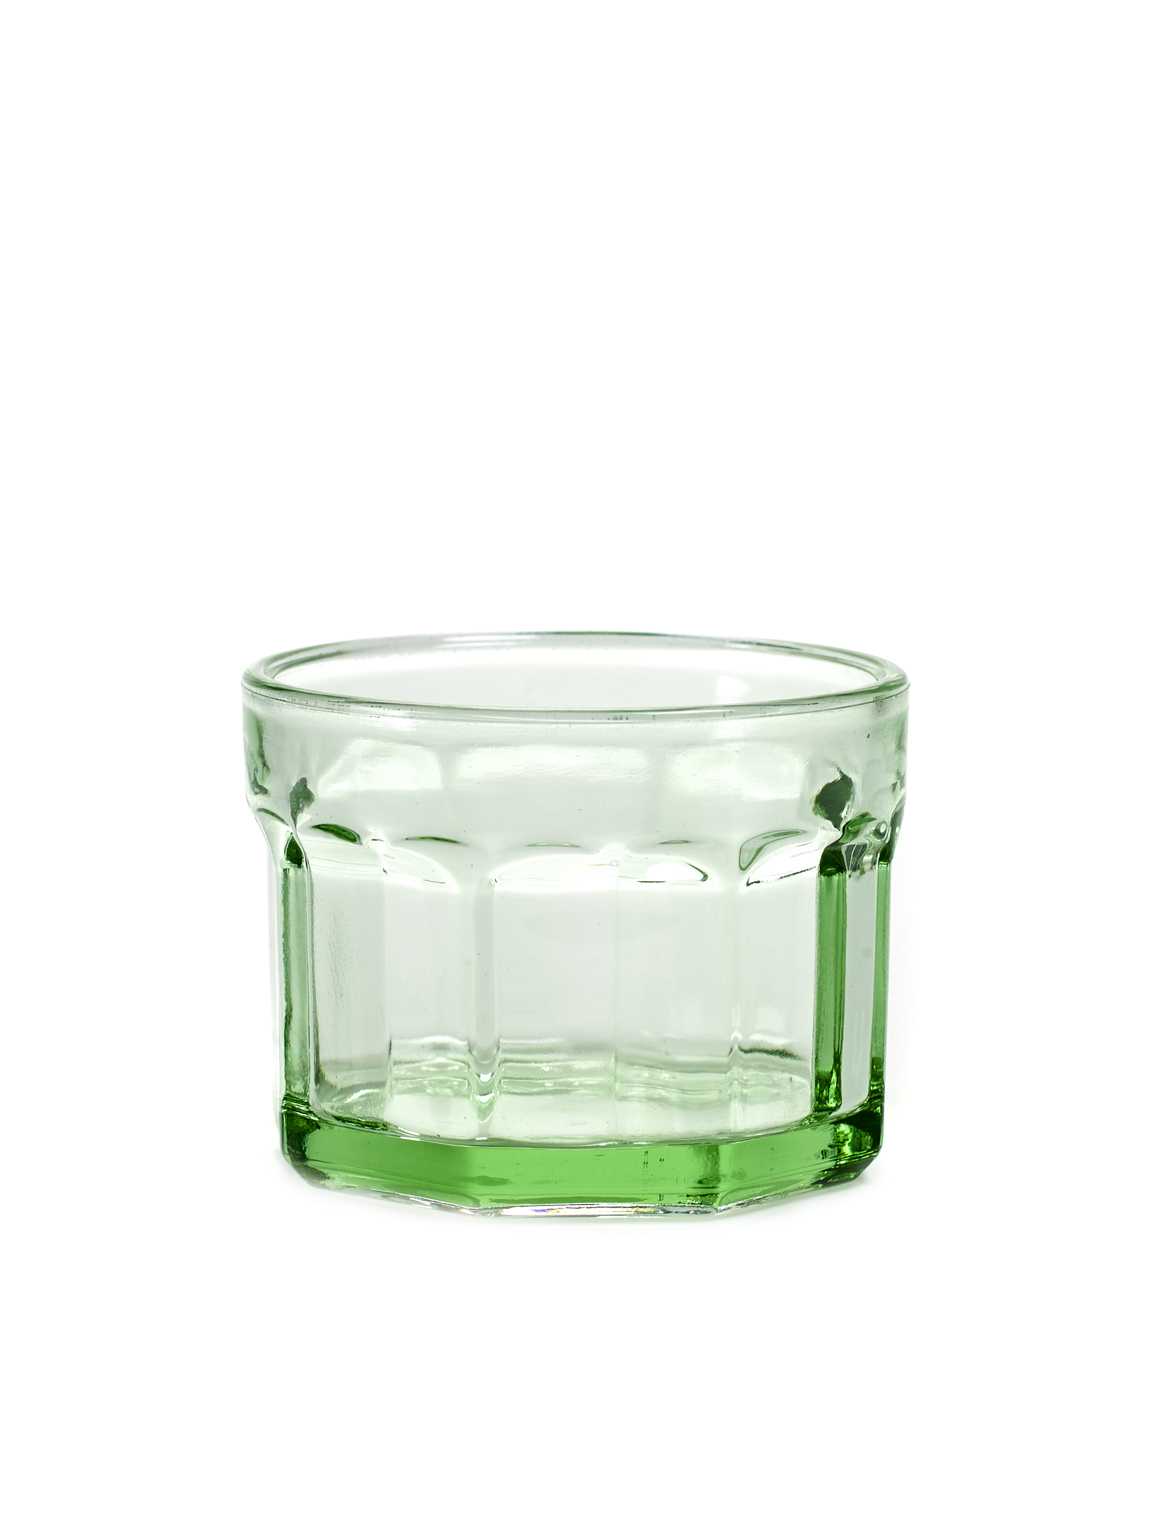 Serax Glass S Transparent Green - Fish & Fish